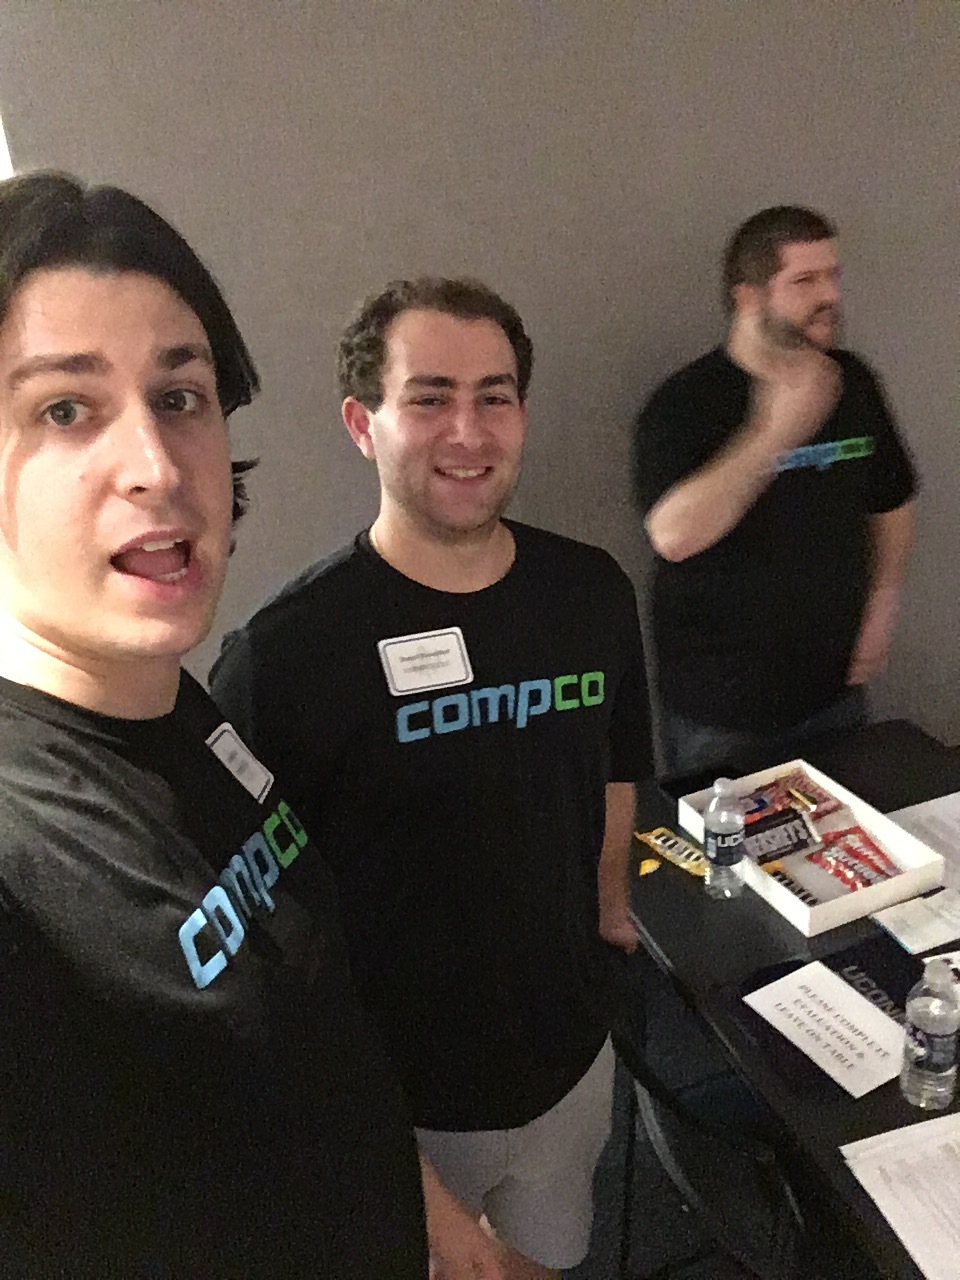  Patrick, Dan, and Nate at Compco’s 2nd career fair 